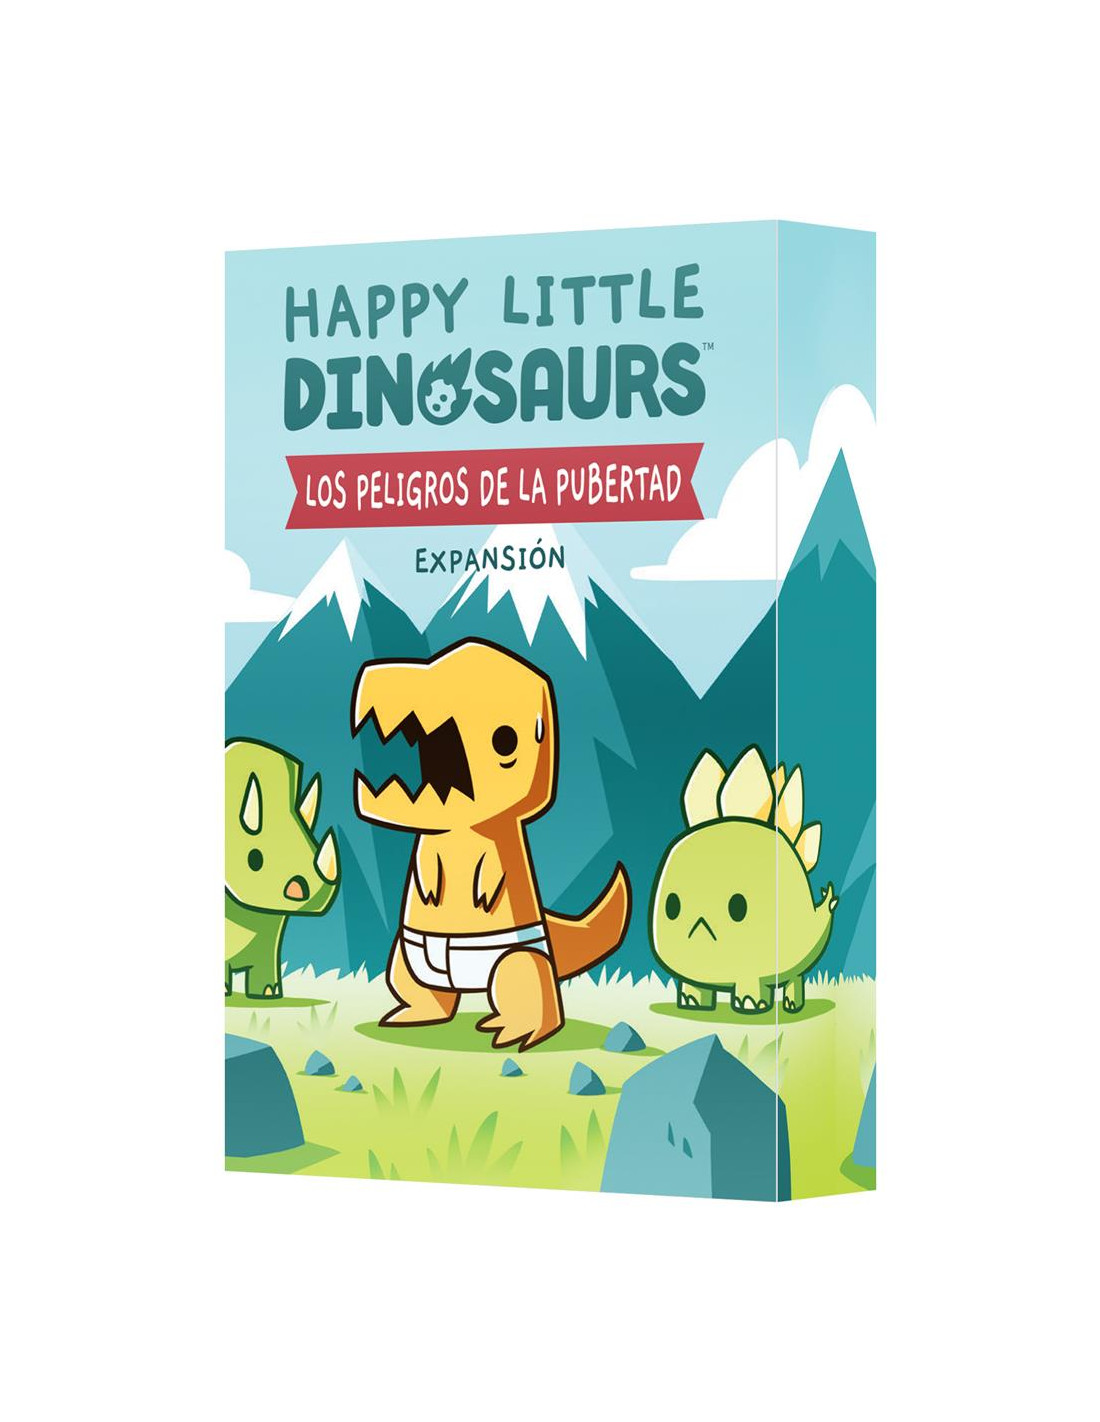 Happy Little Dinosaurs. Los Peligros de la Pubertad